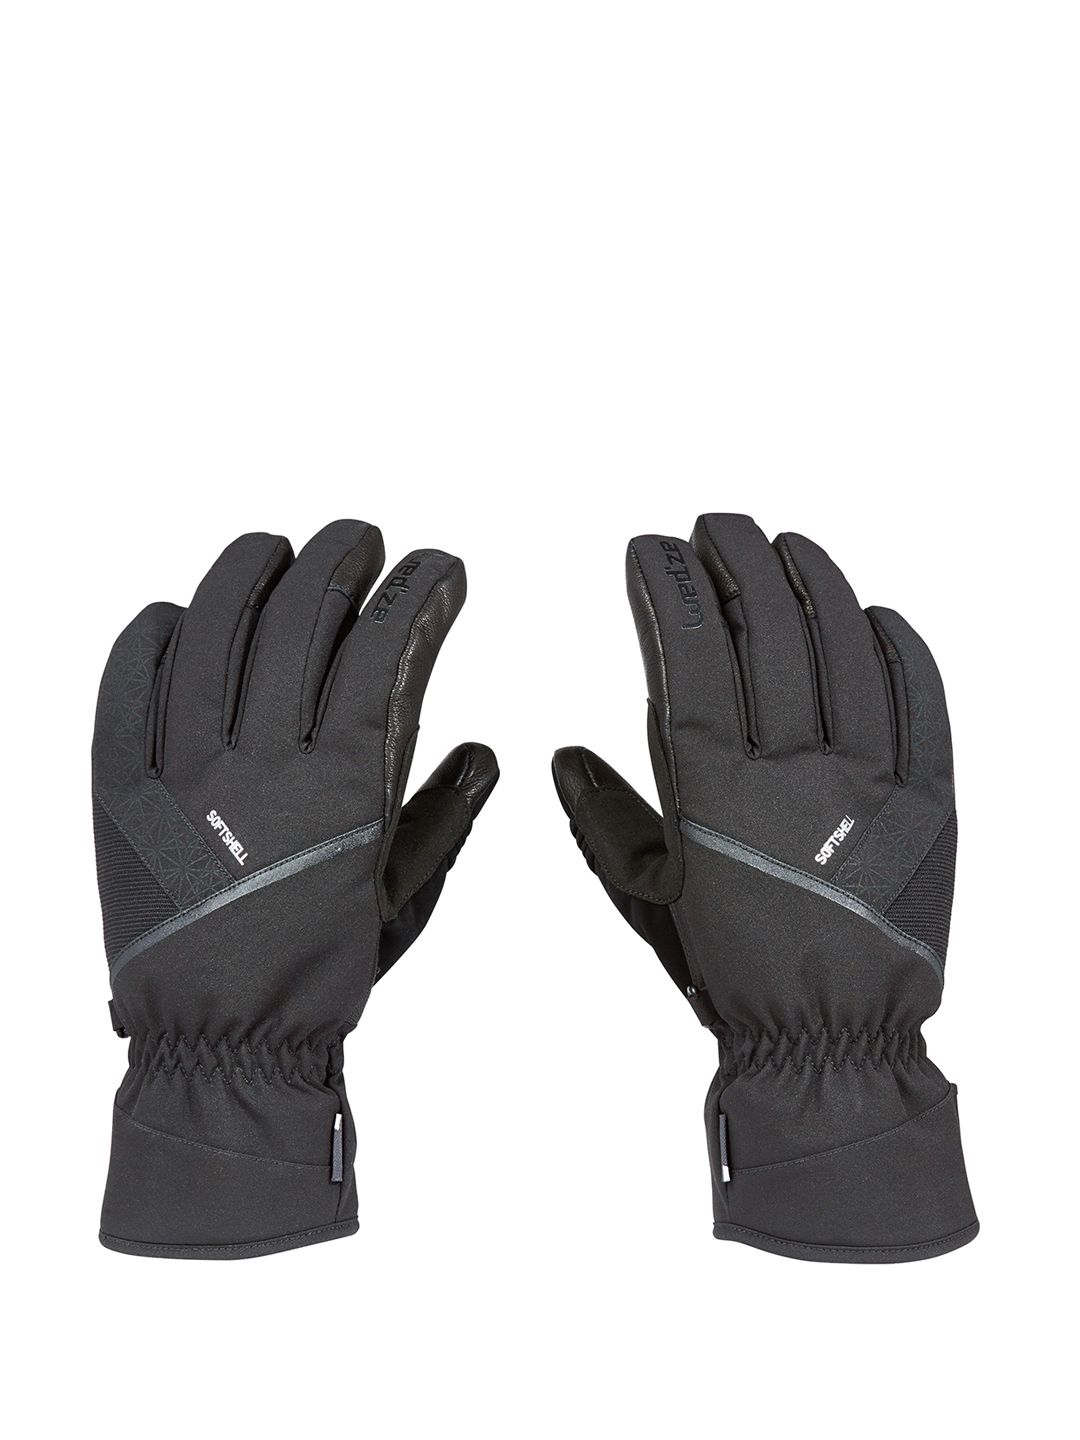 WEDZE By Decathlon Unisex SKI Gloves 500 Price in India